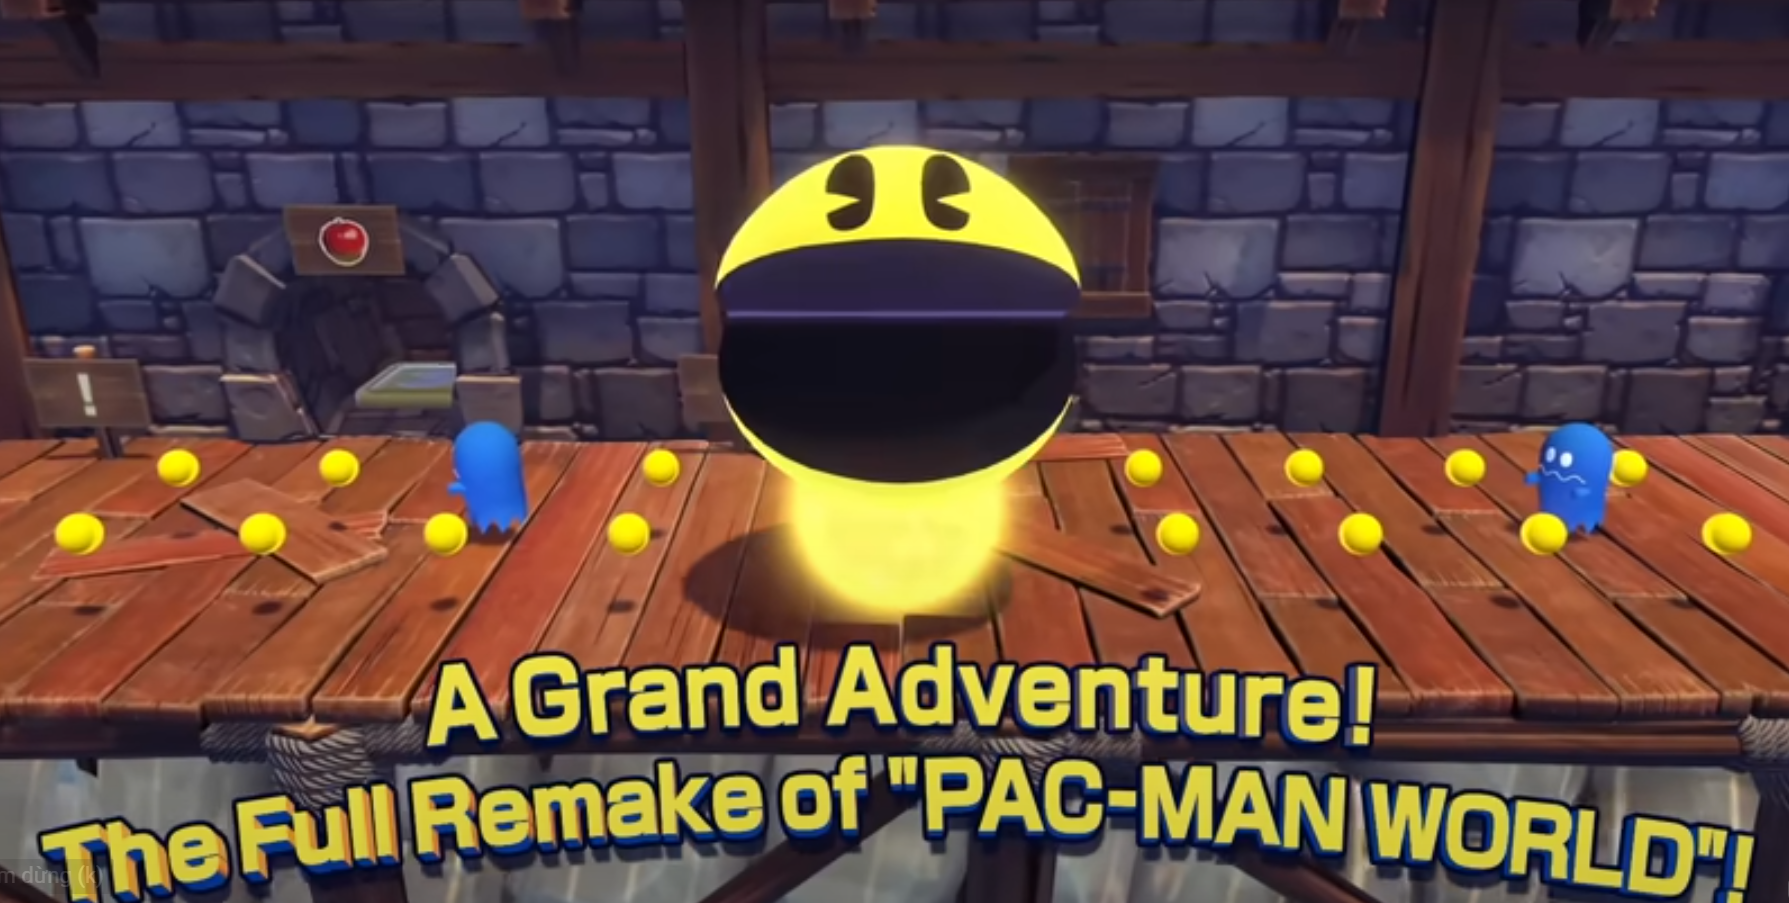 Huyền thoại tuổi thơ Pac-Man được làm mới sau gần 20 năm “ngủ đông” - Ảnh 2.